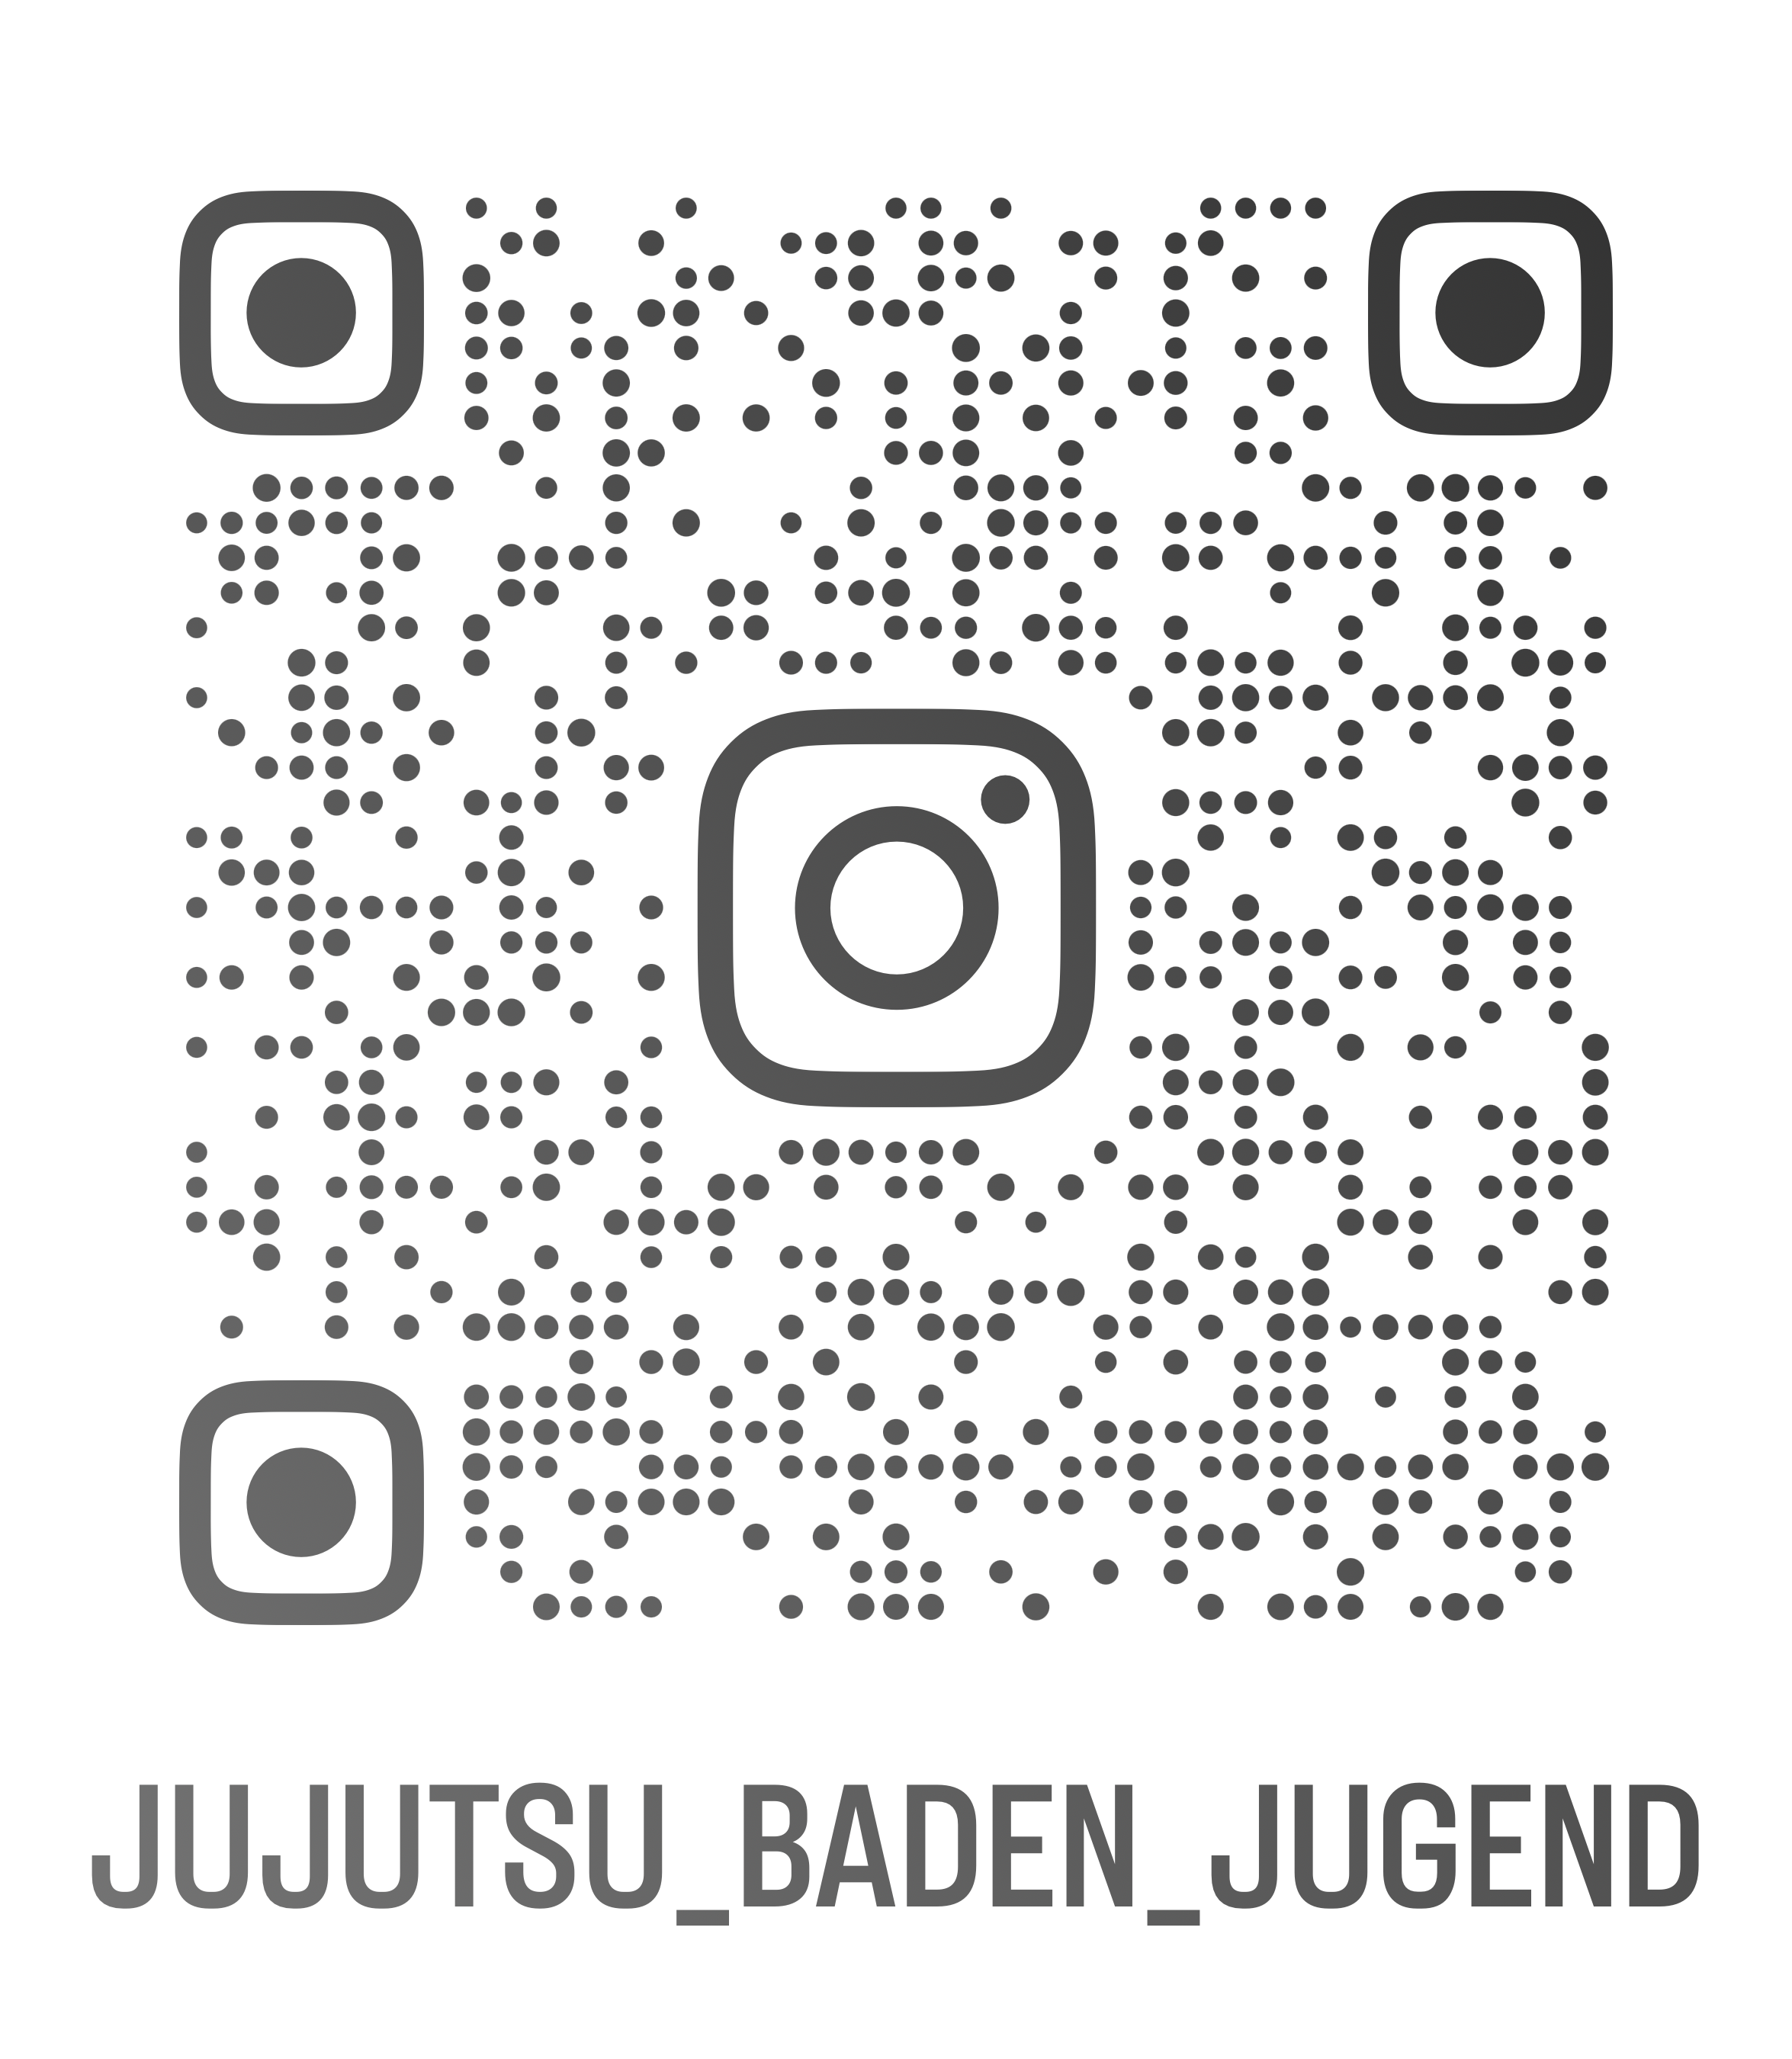 jujutsu_baden_jugend_qr-2